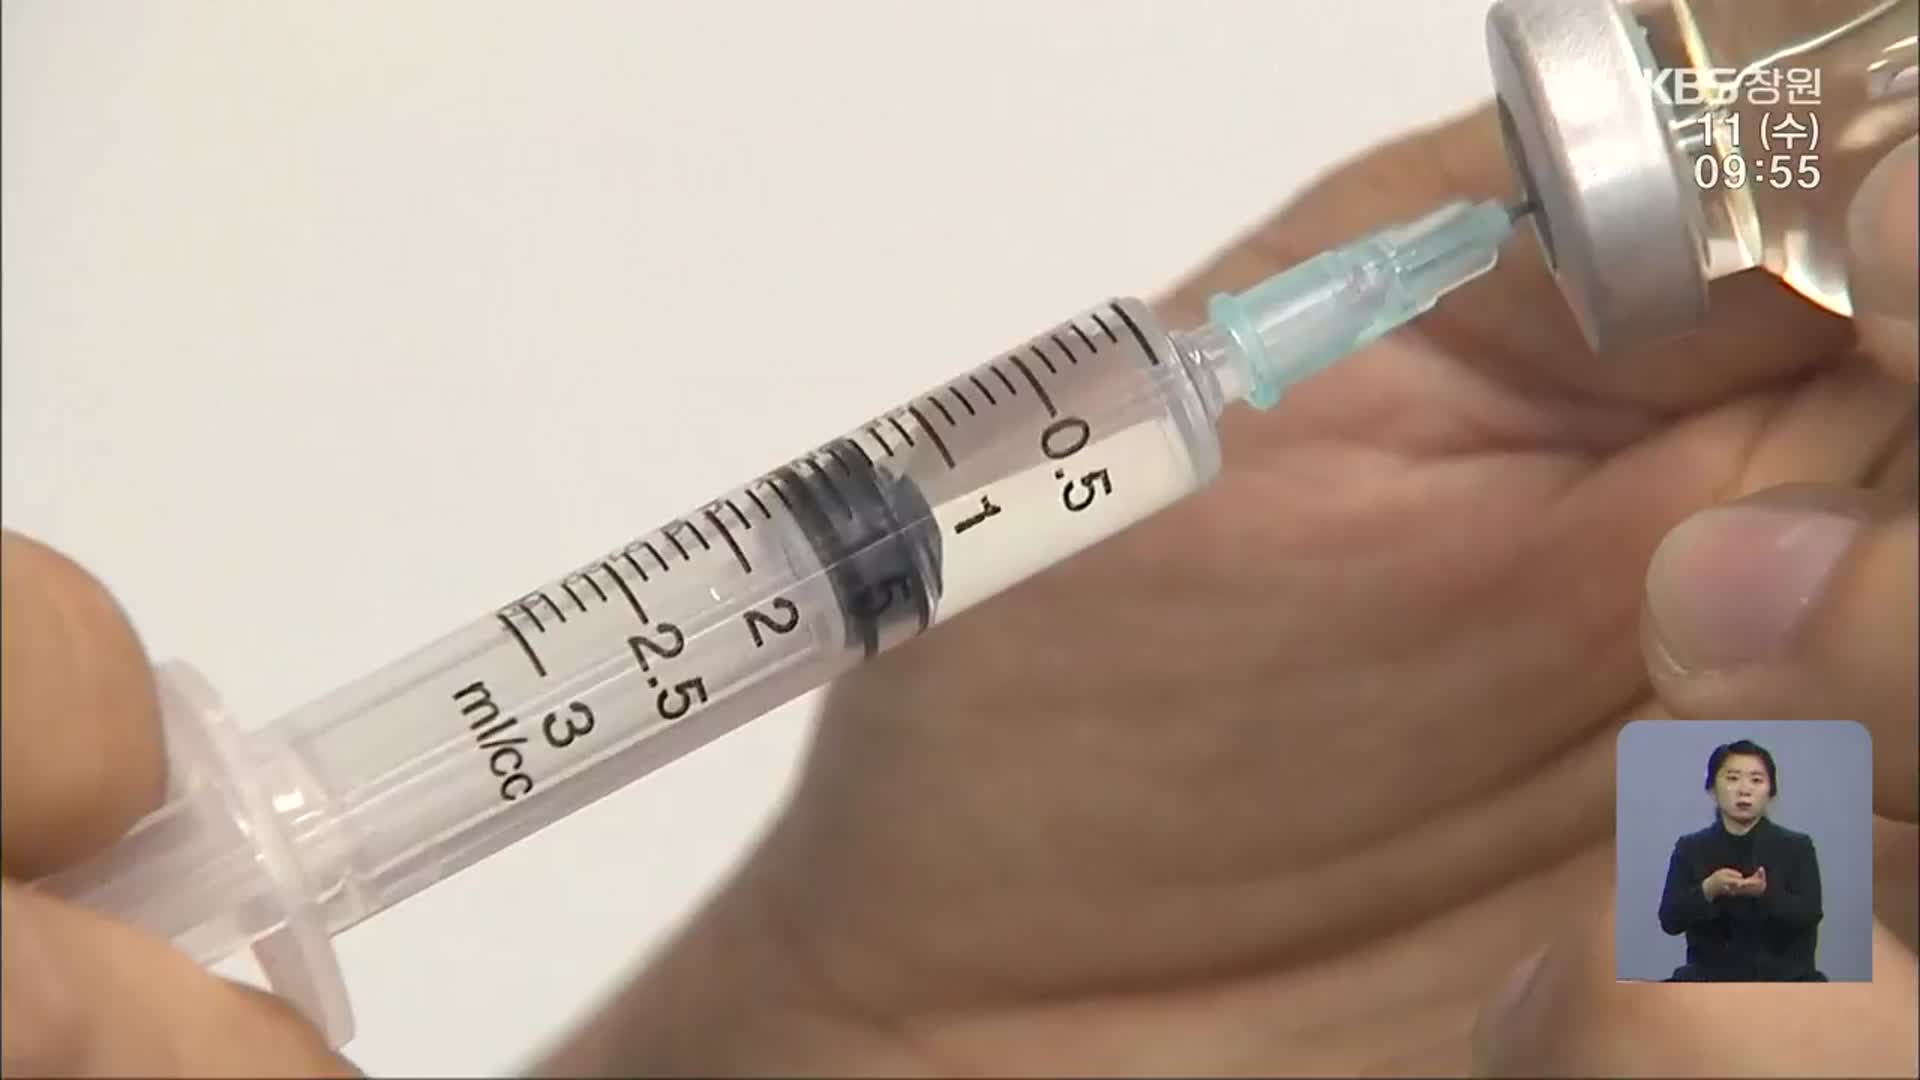 [행정사무감사]① “경남 독감 백신 수급 비효율적” 질타